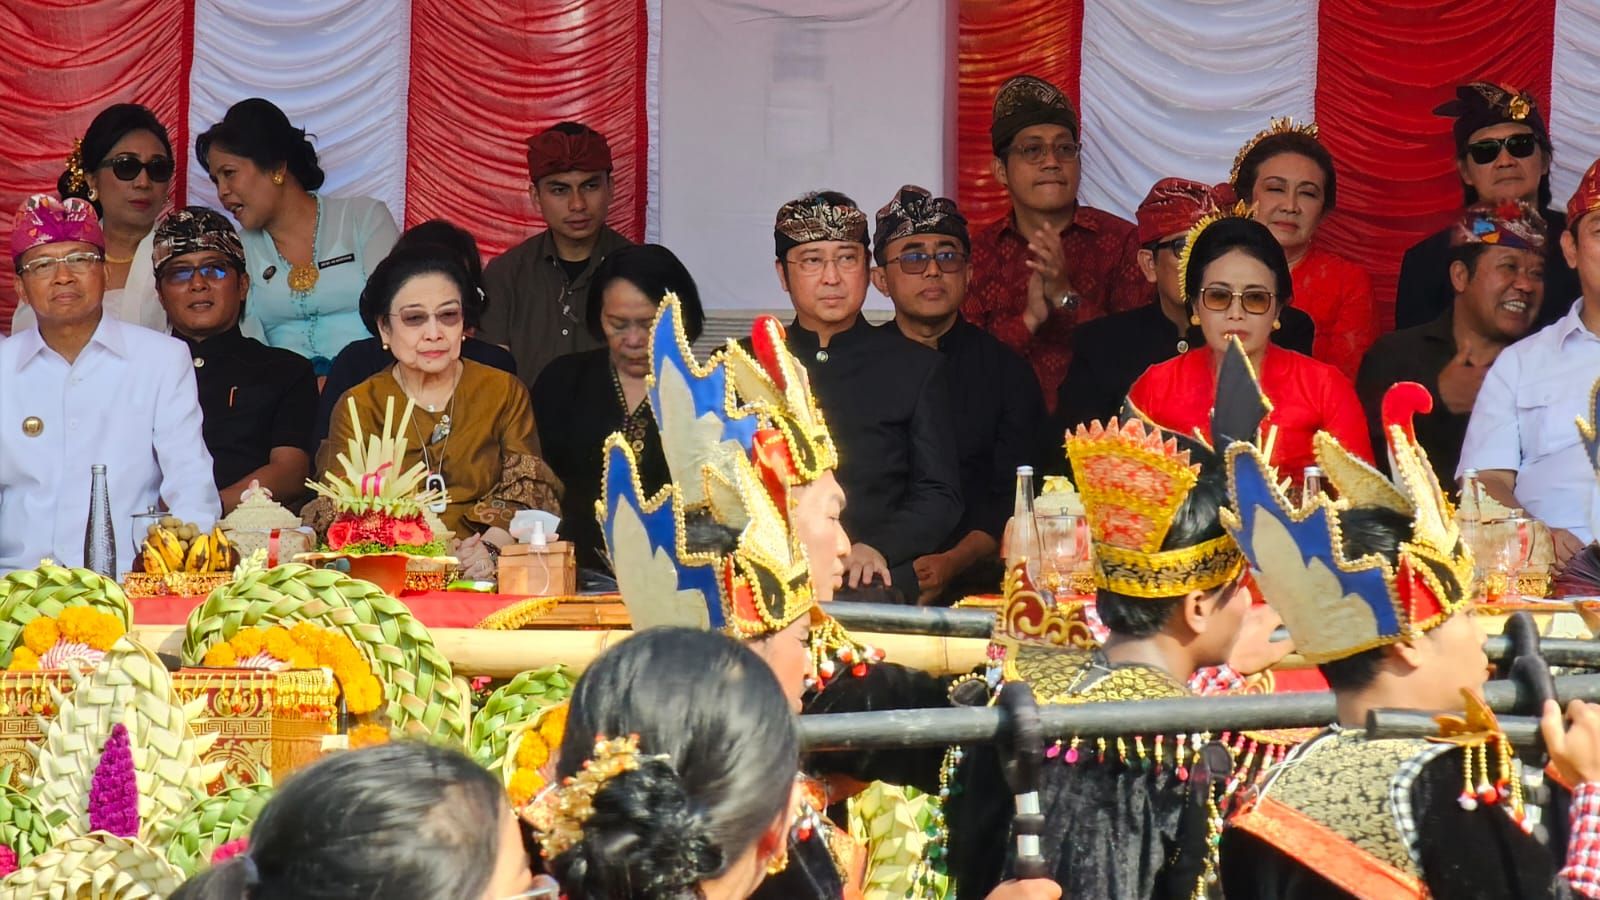 Pesan Megawati ke Anak-anak Muda: Kalau Mau Senang K-Pop Tidak Apa, tapi Cintai Seni Indonesia